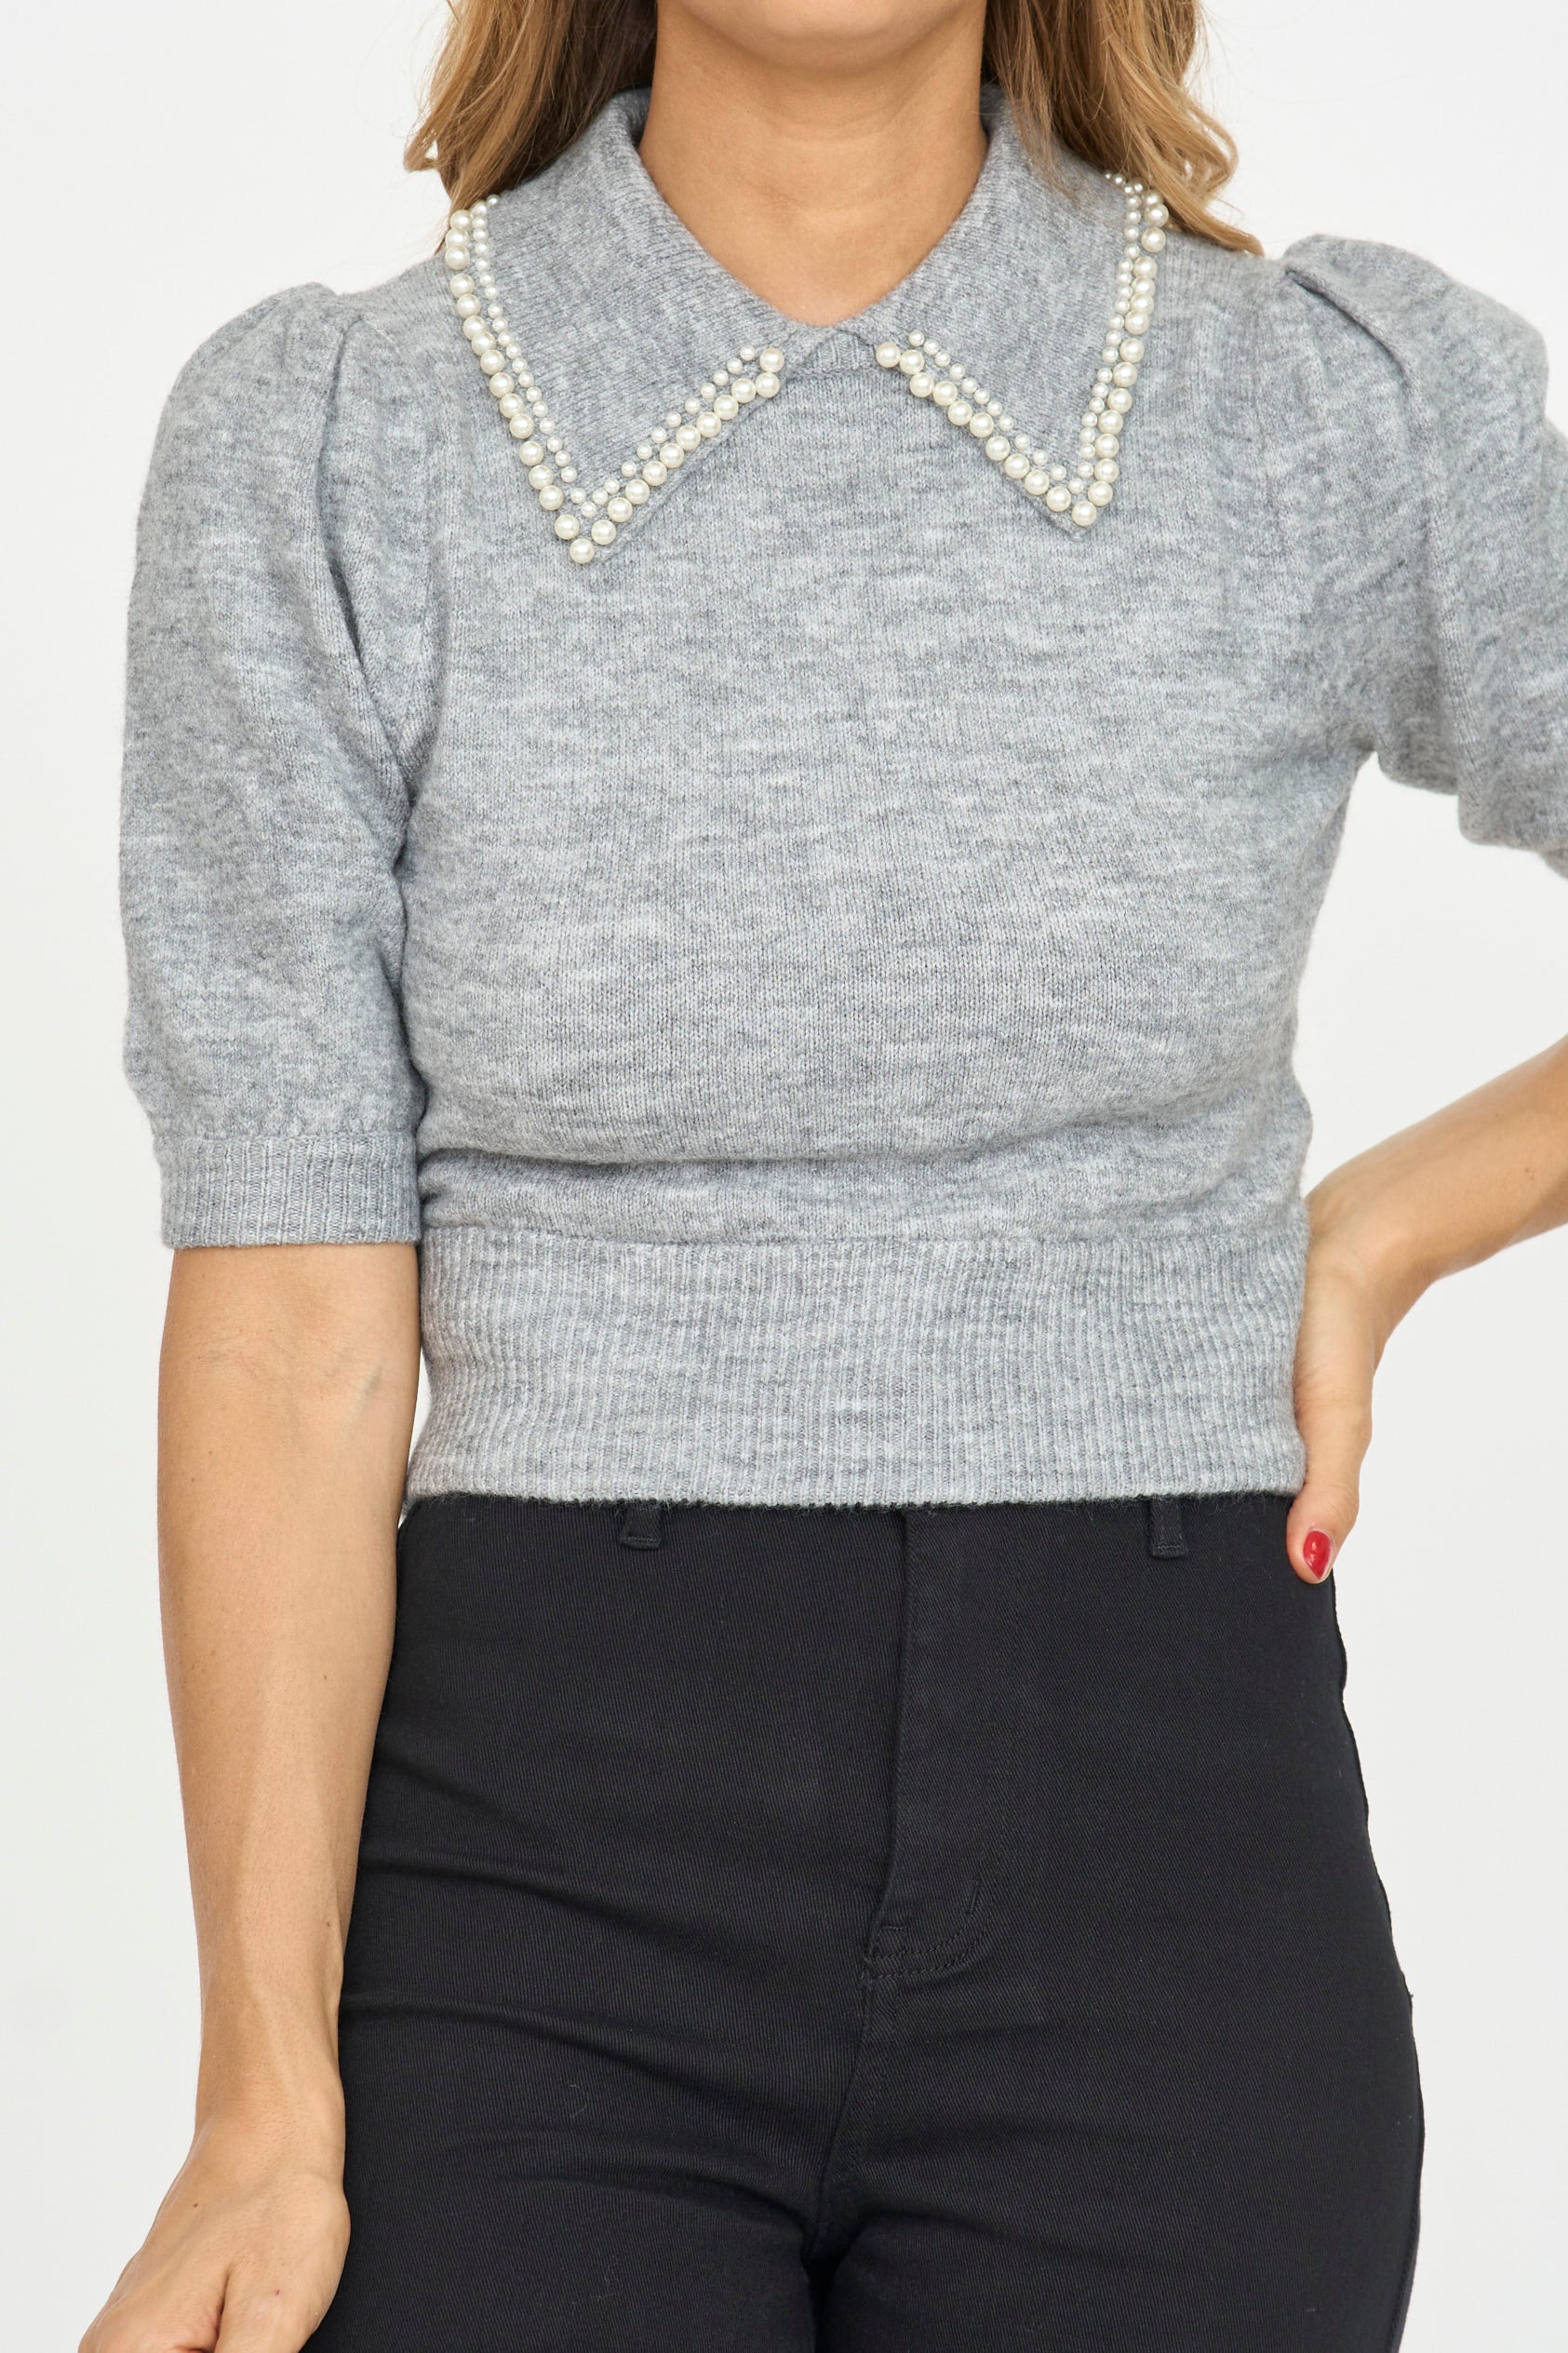 Pearl Collar Sweater Top